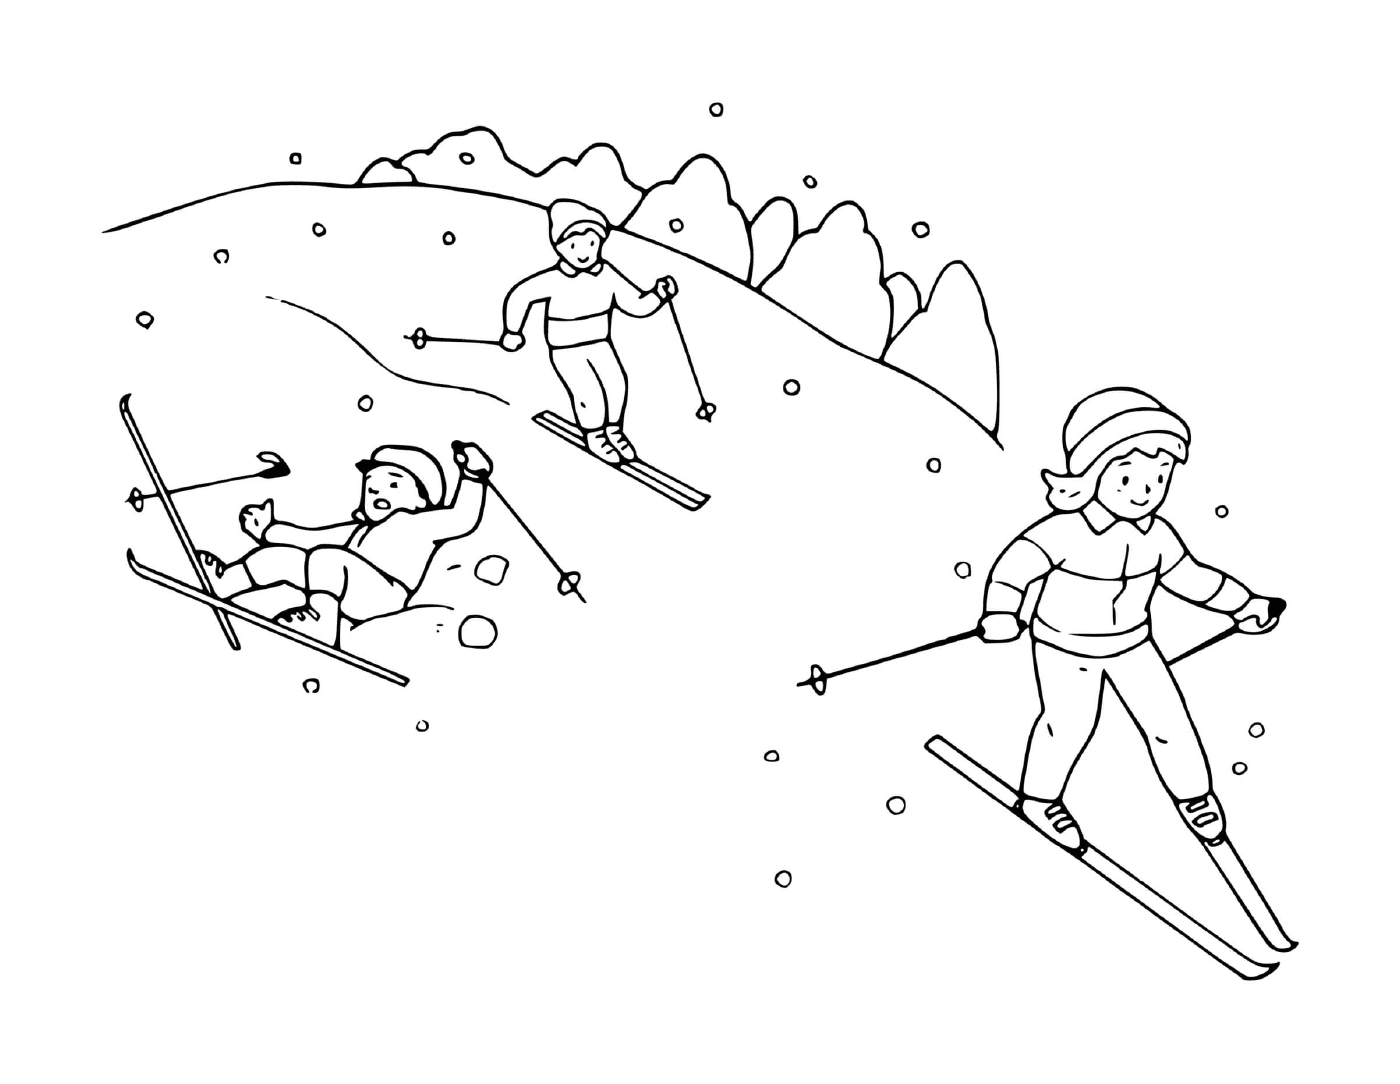  الأسرة التي تستمتع بالتزلج معاً 